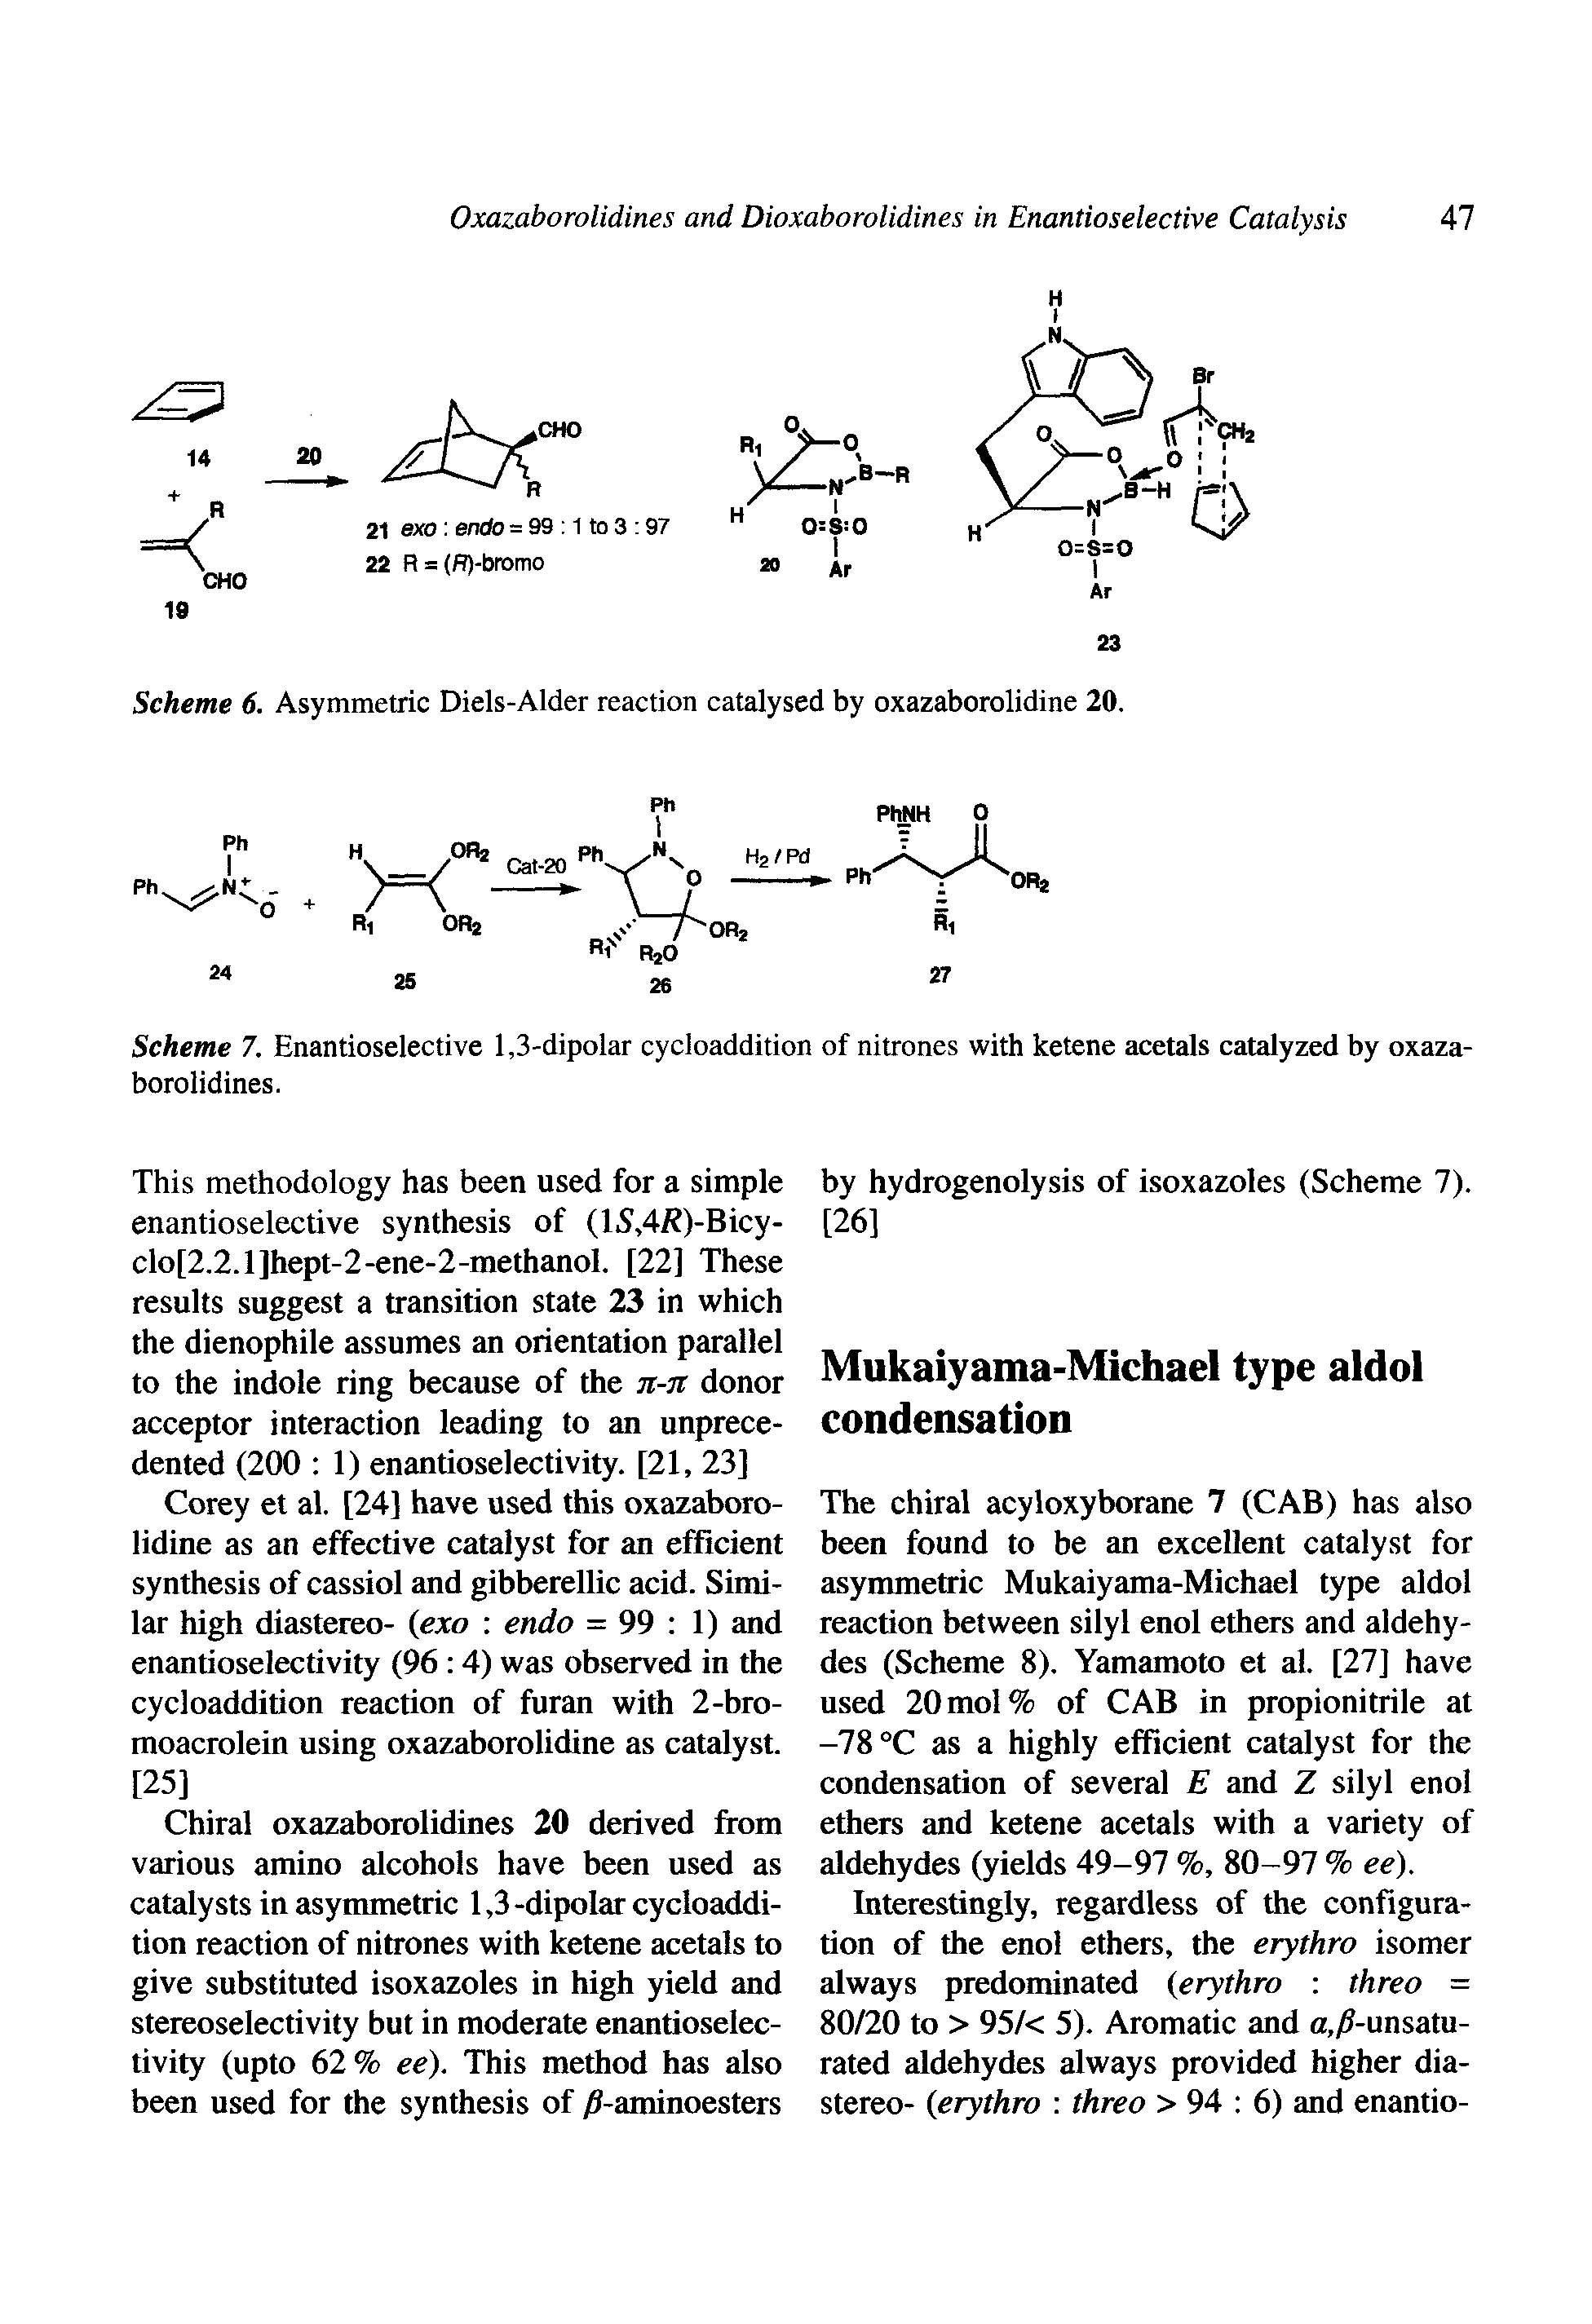 Scheme 6. Asymmetric Diels-Alder reaction catalysed by oxazaborolidine 20.